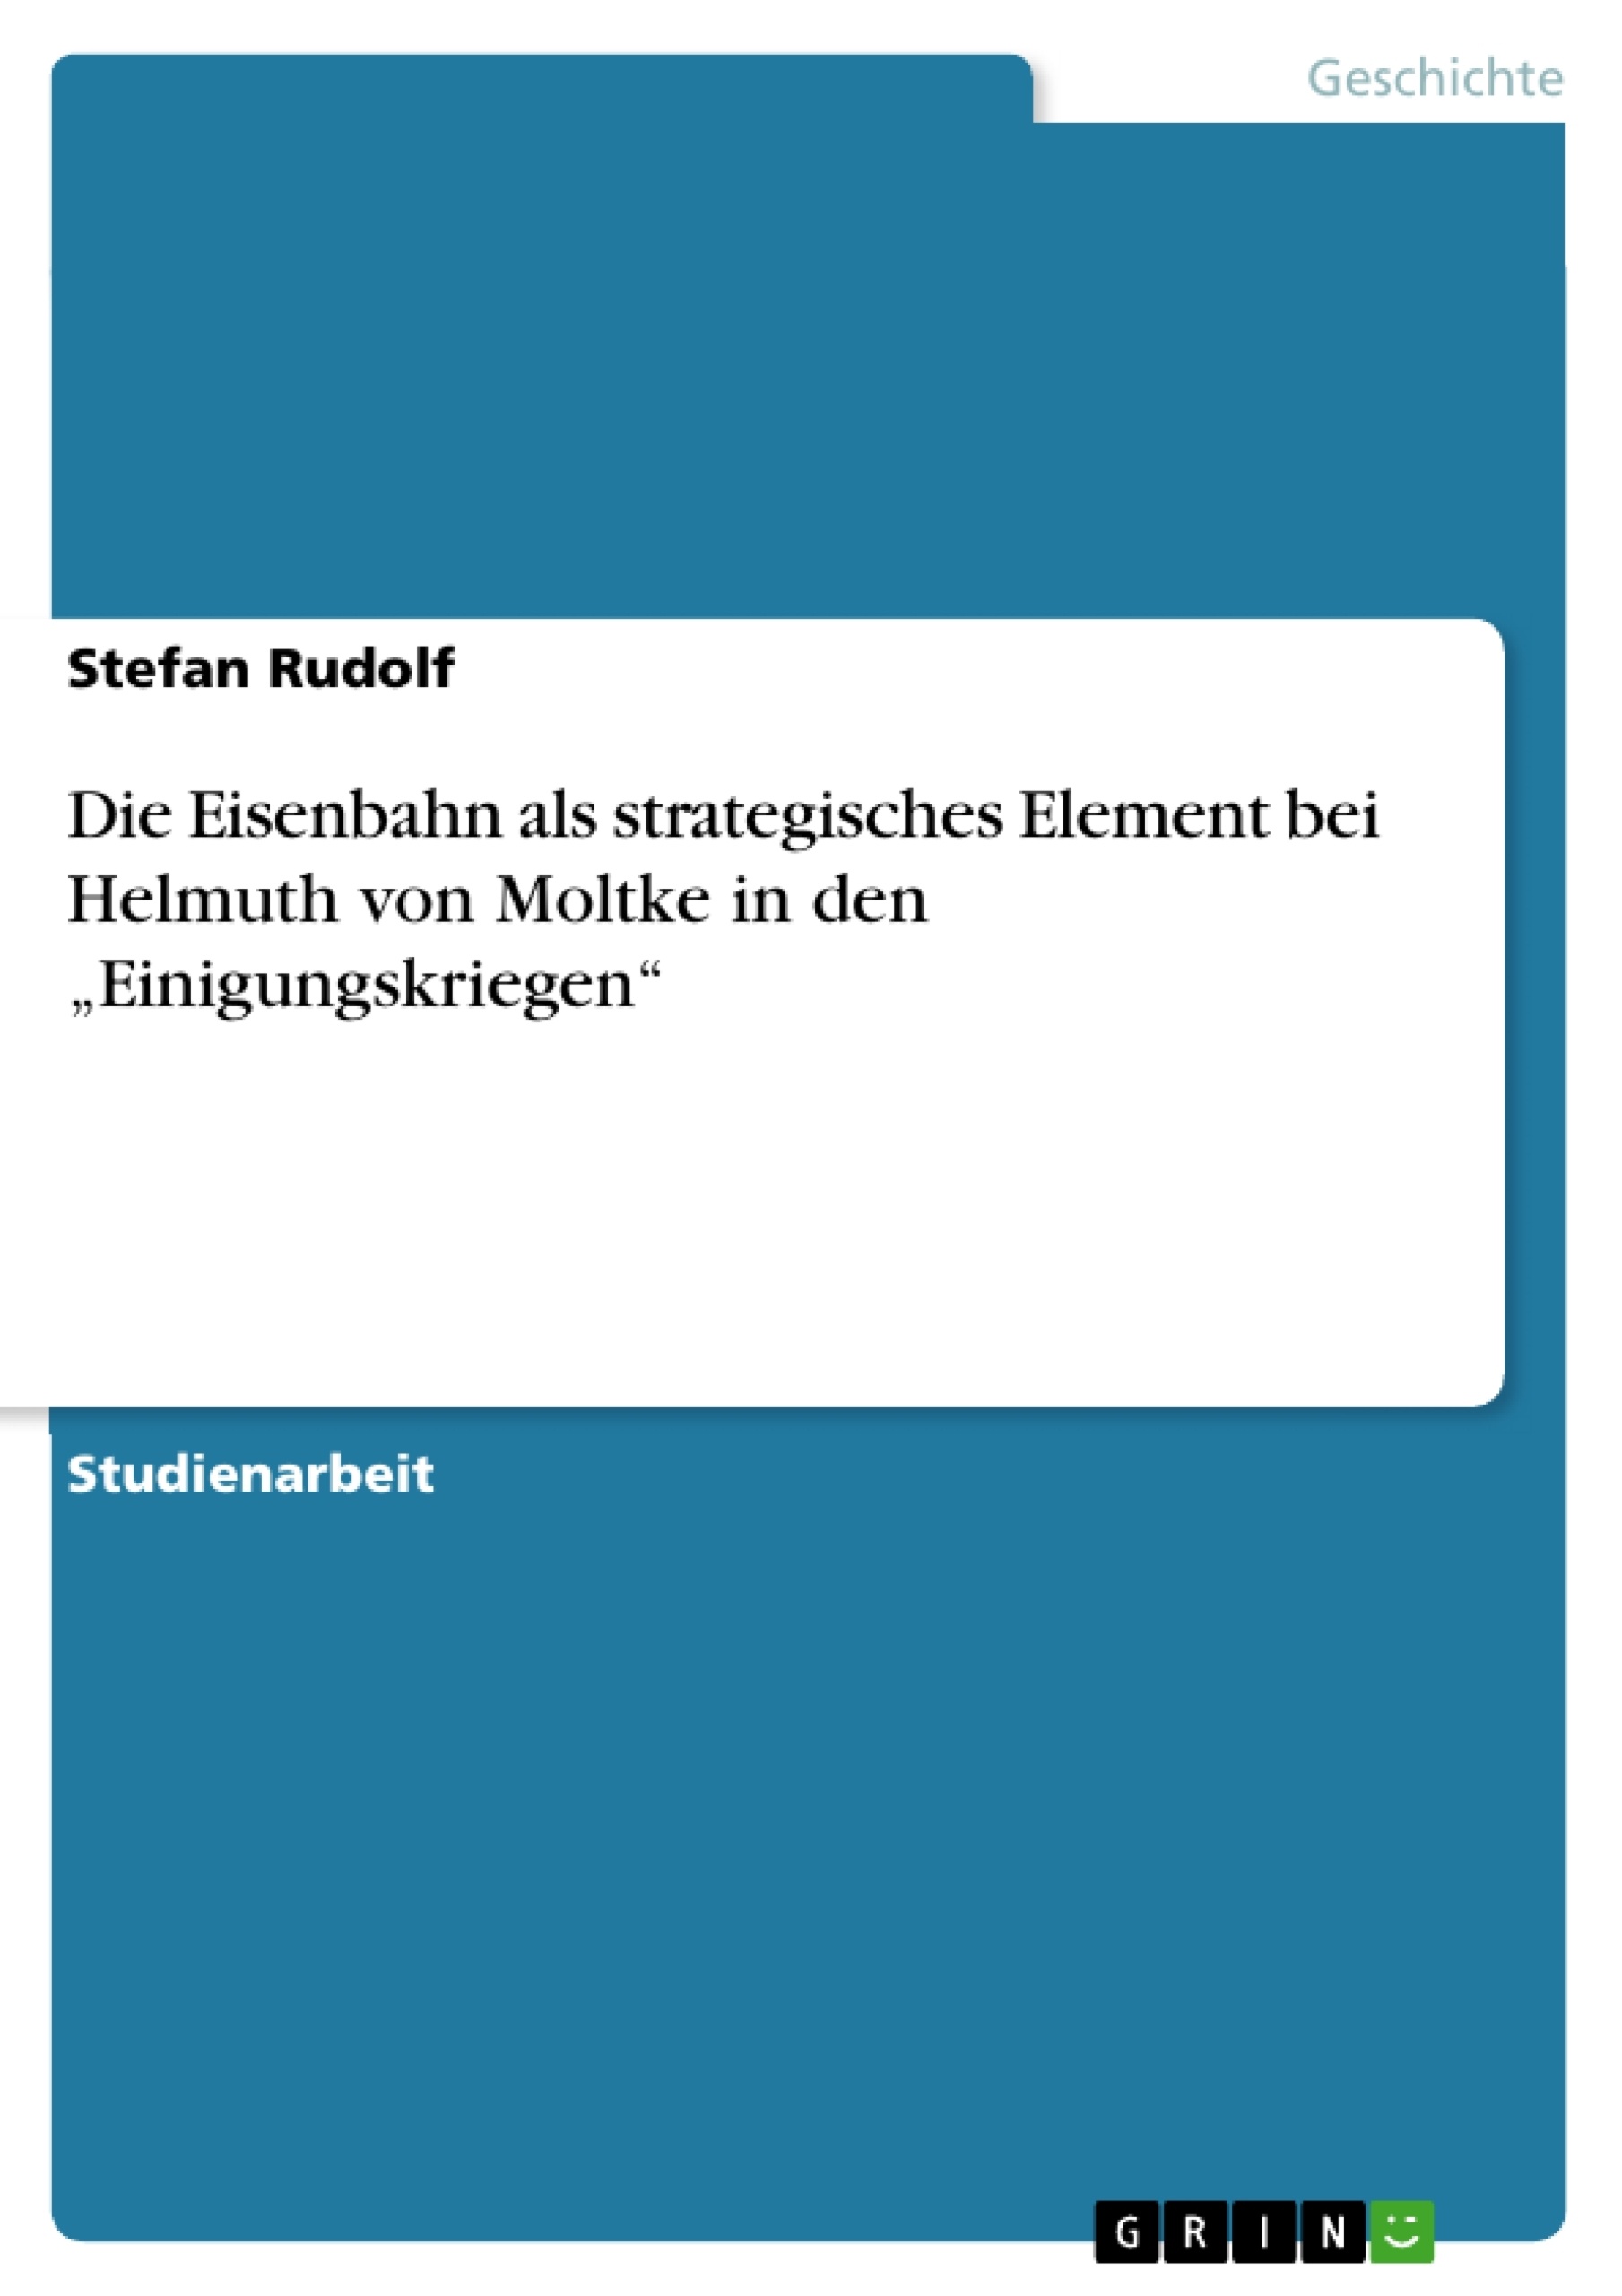 Título: Die Eisenbahn als strategisches Element bei Helmuth von Moltke in den „Einigungskriegen“